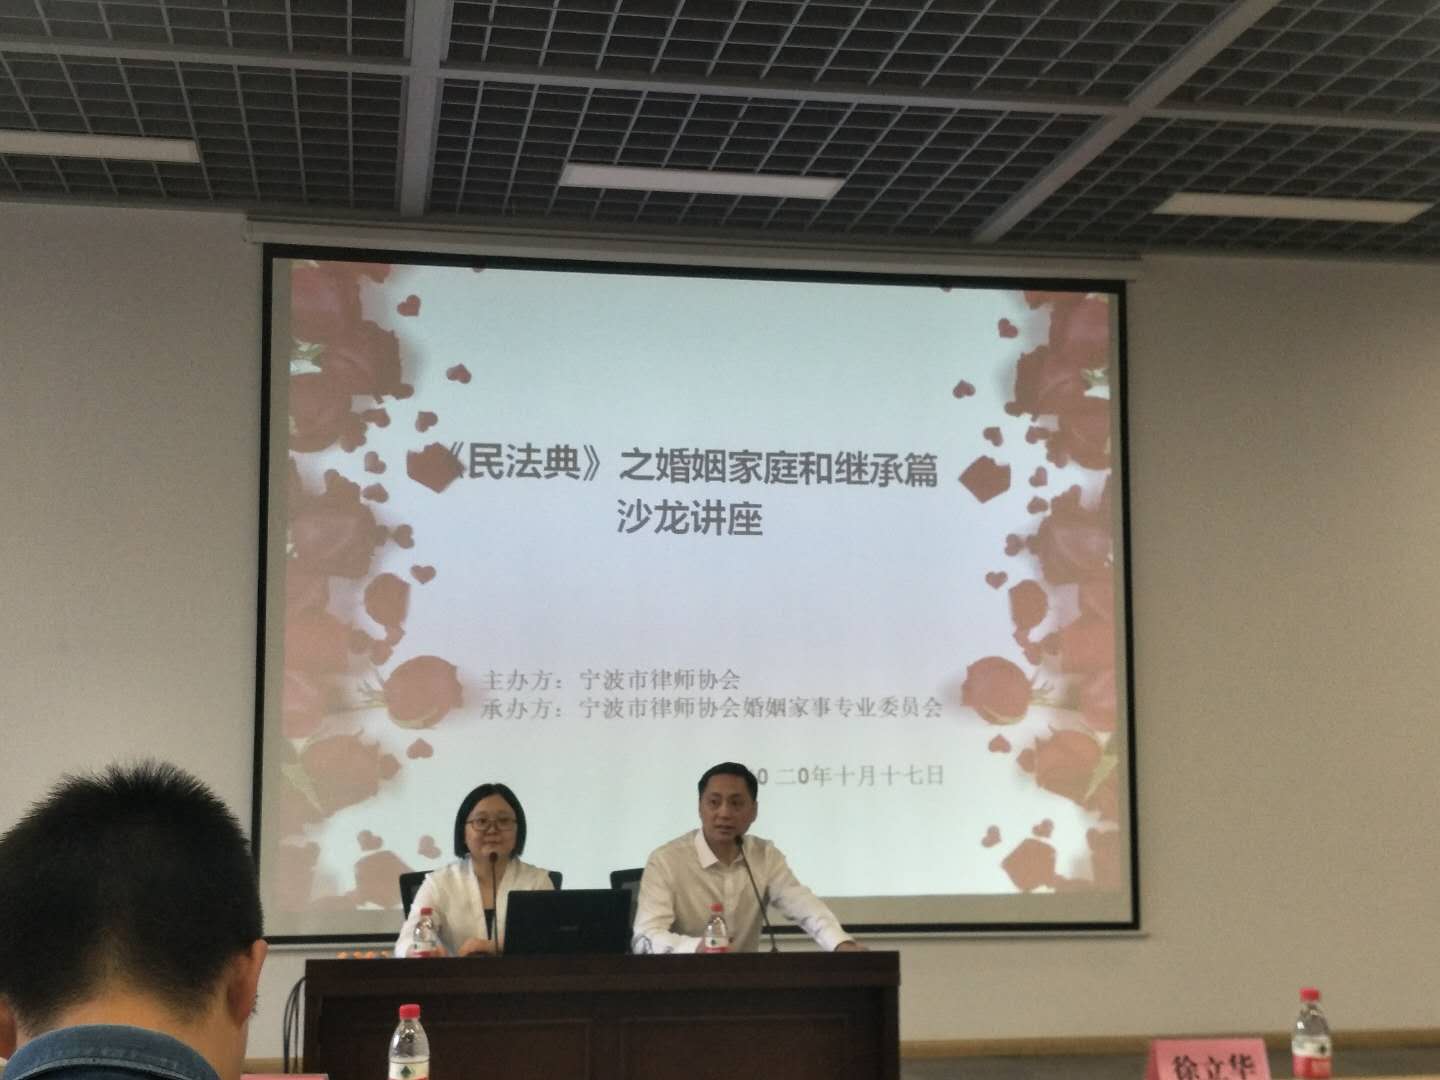 宁波市律师协会组织《民法典》婚姻家庭和继承编沙龙讲座，主持人致开幕词